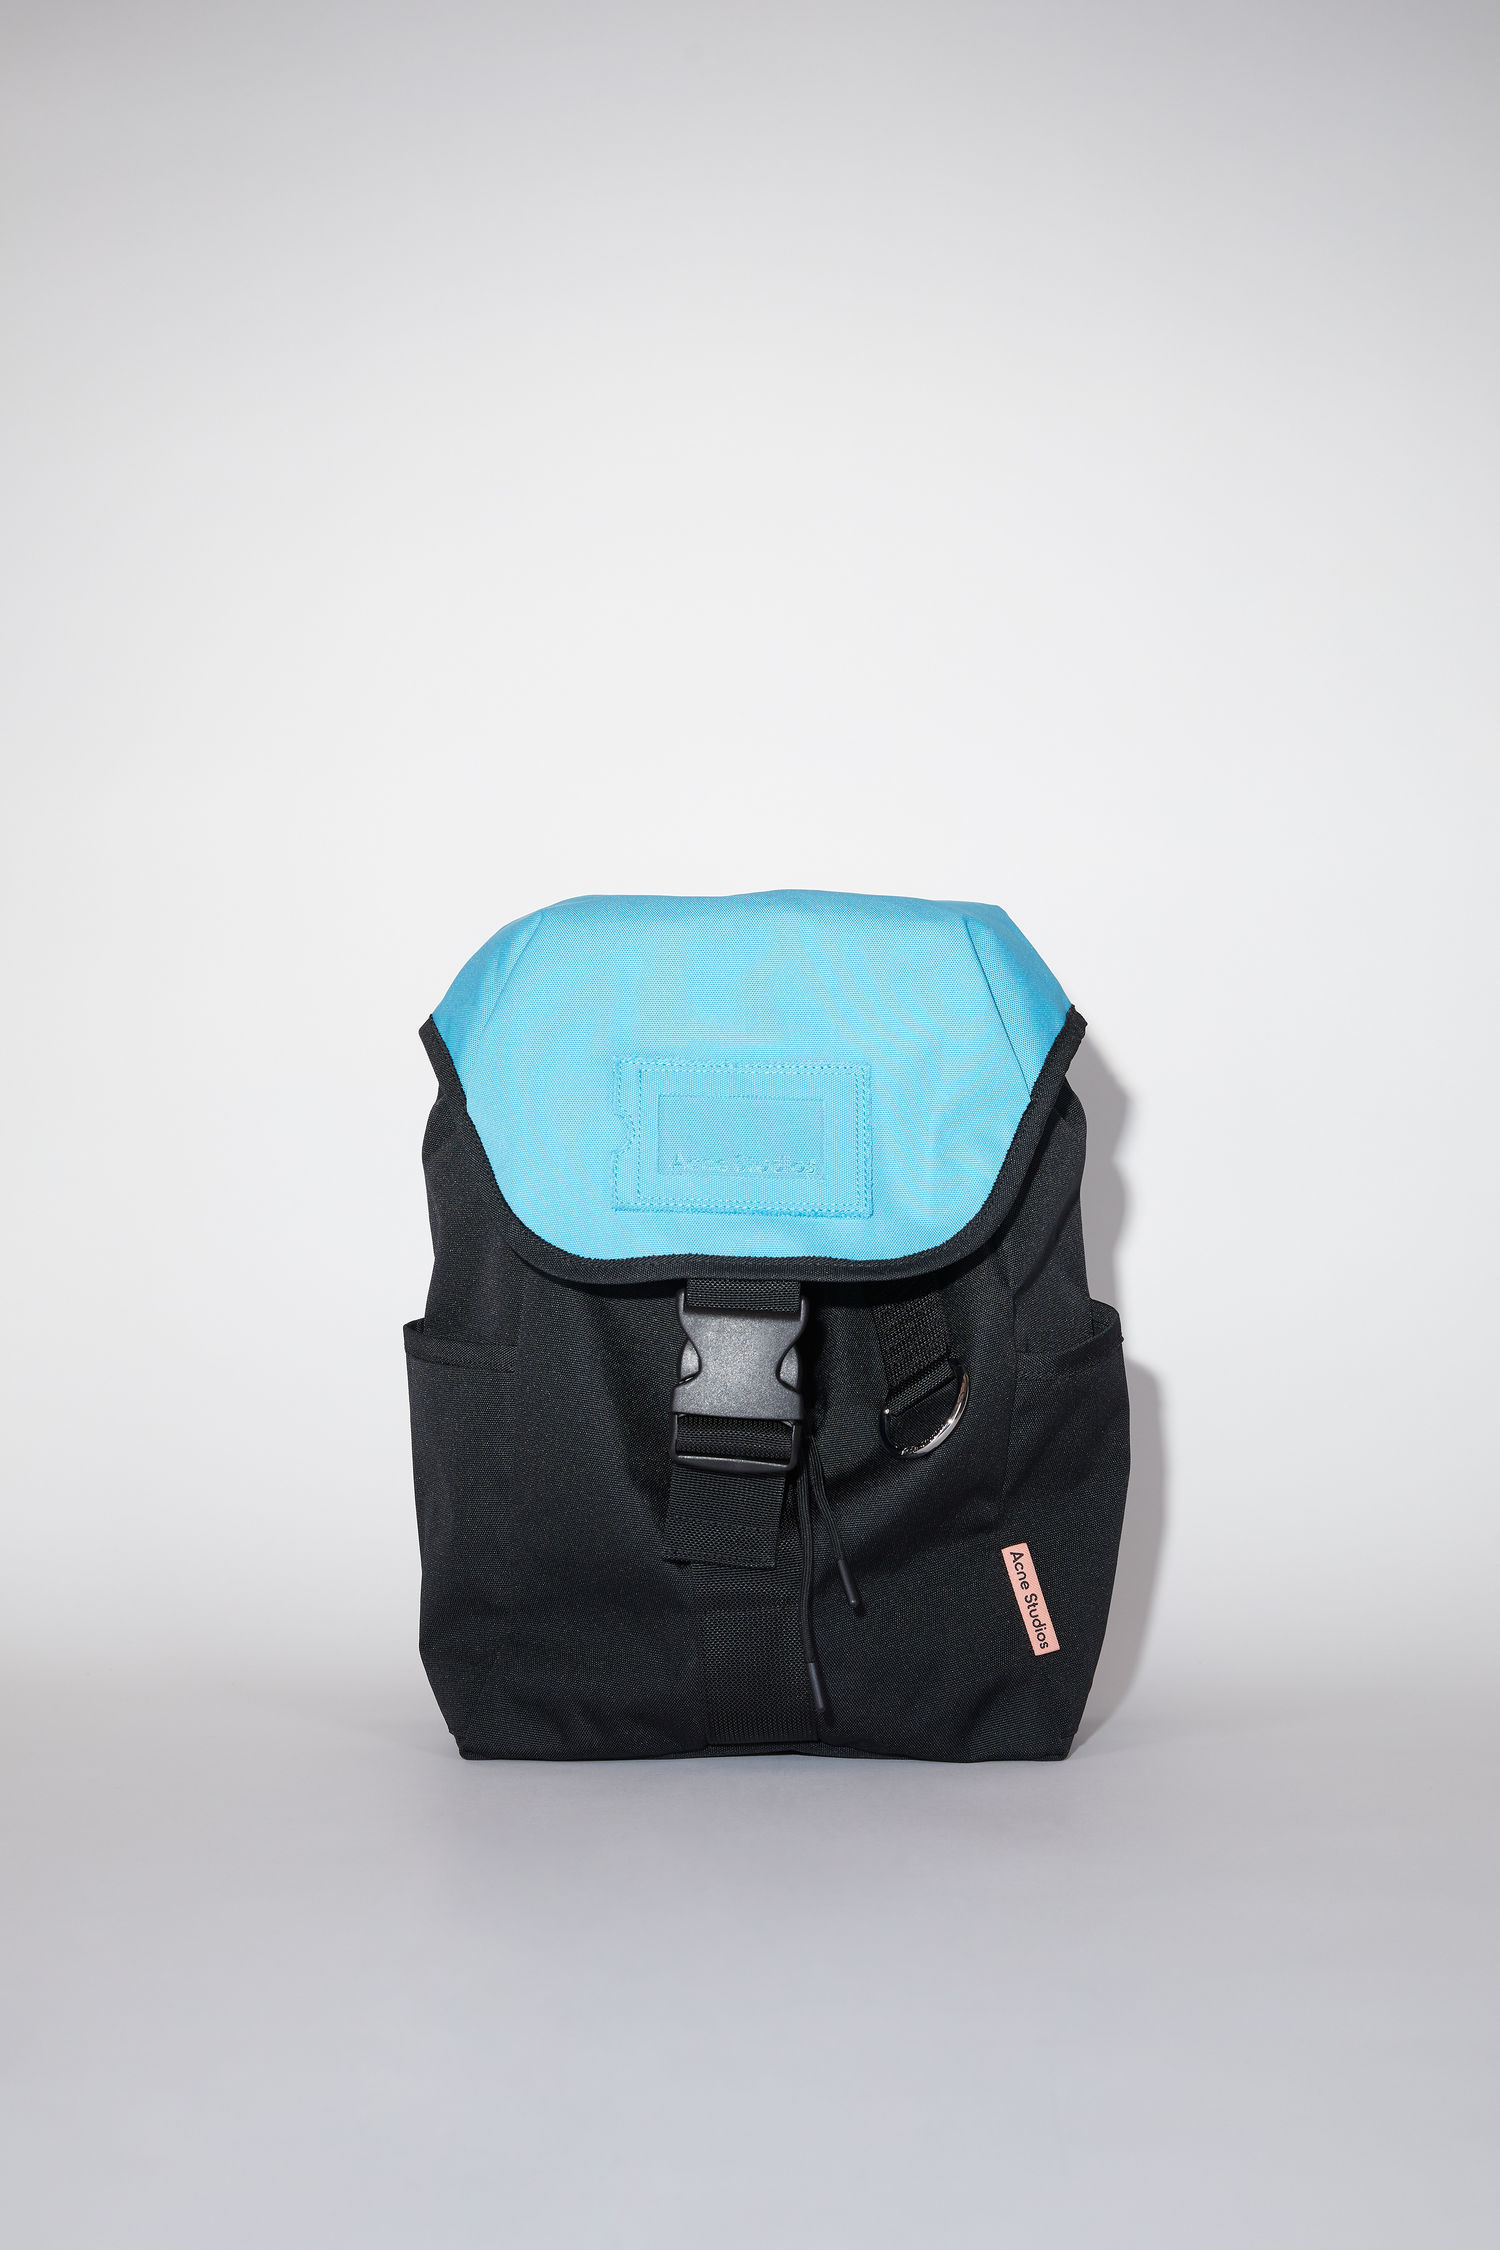 아크네 스튜디오 백팩 라지 Acne Studios Large backpack - Black/blue